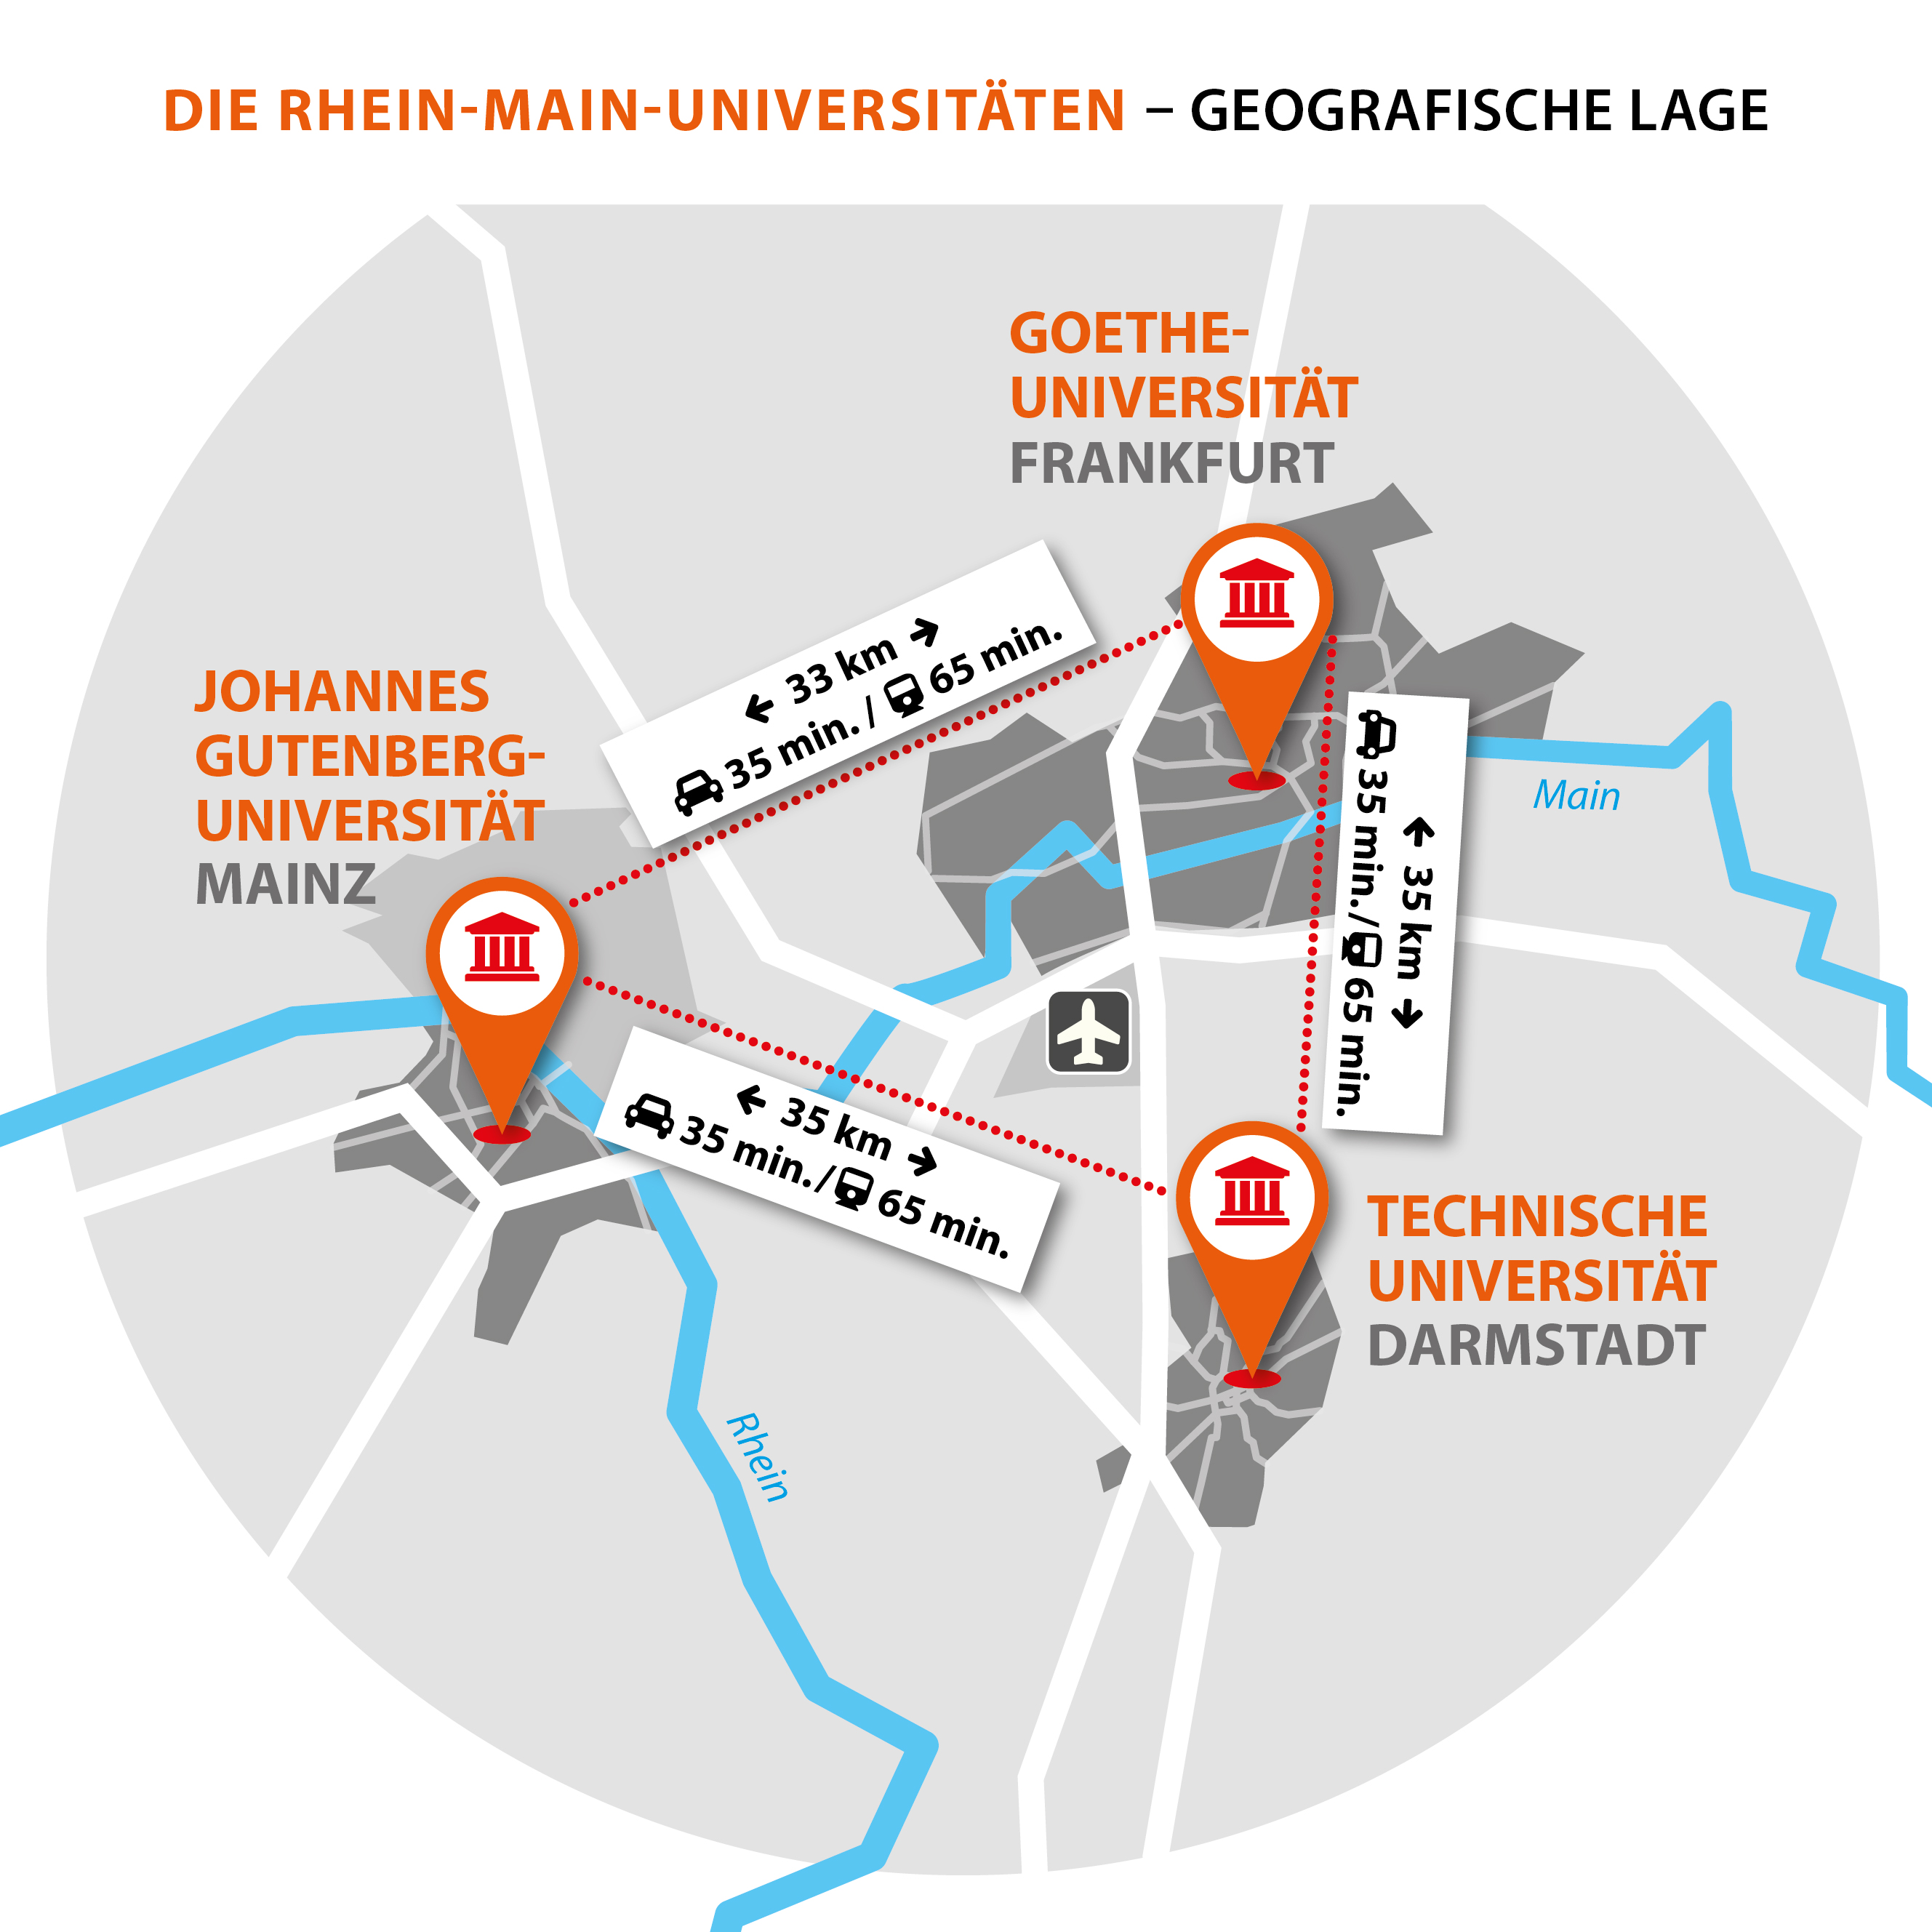 Die Rhein-Main-Universitäten - Darstellung der Entfernungen zwischen den Universitäten